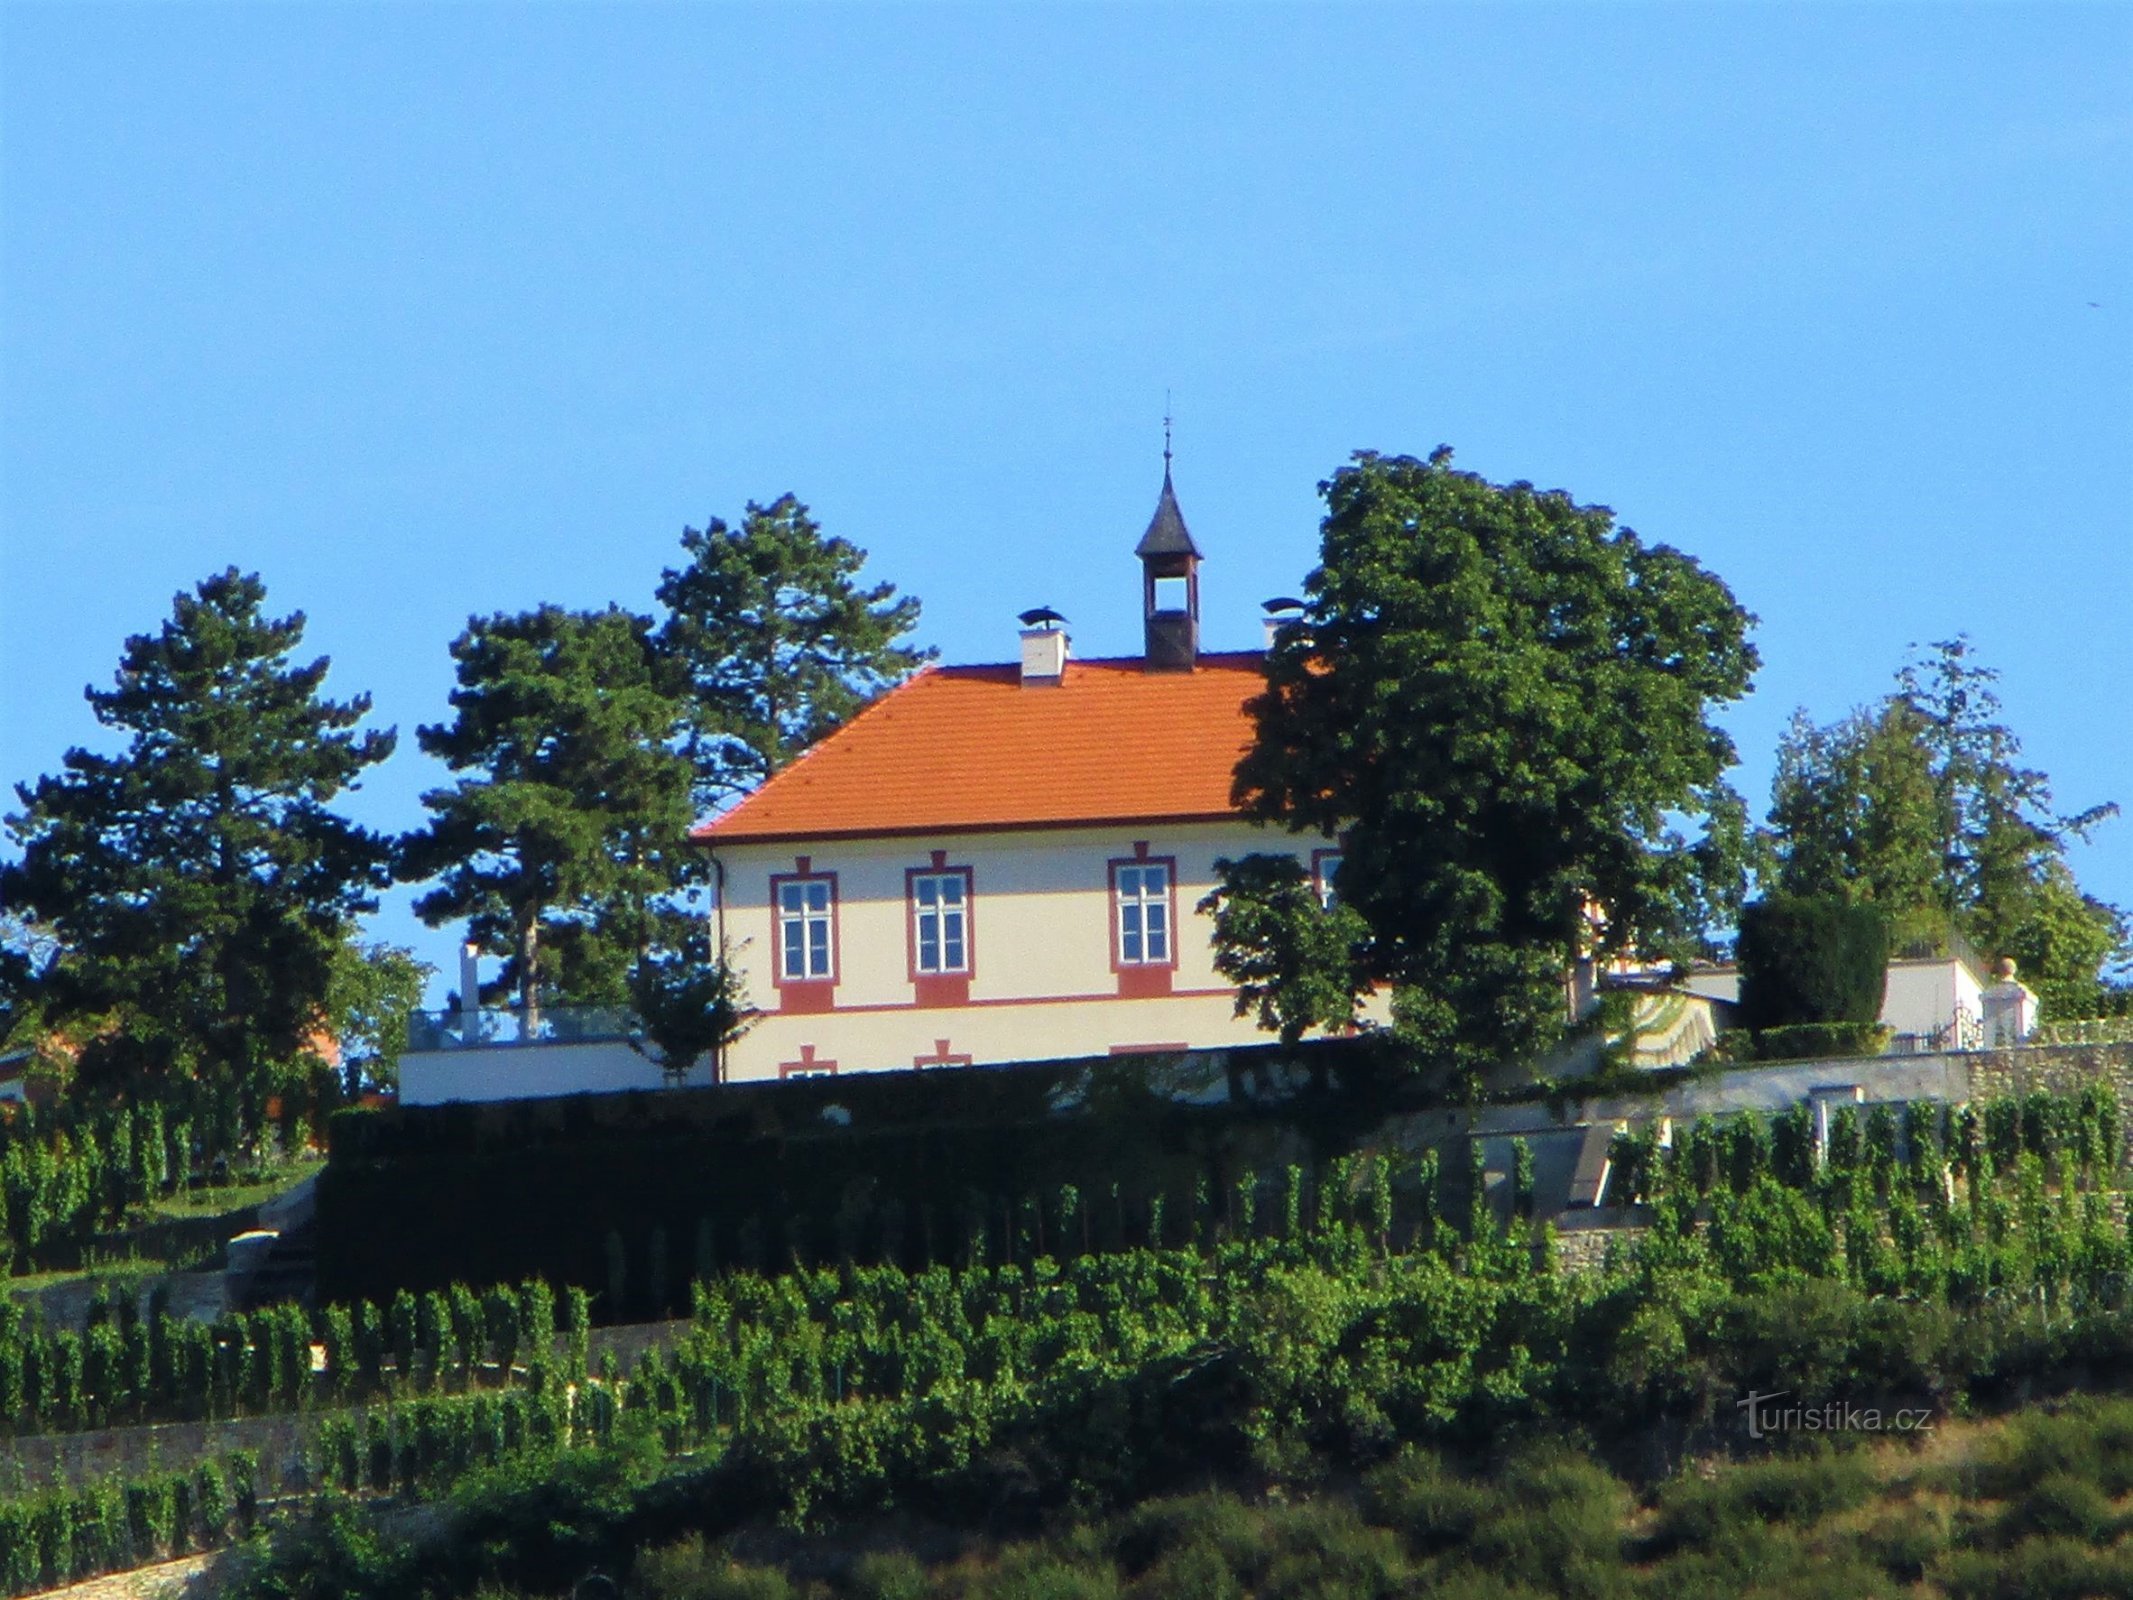 Château de Jabloňka (Prague, 31.7.2020)